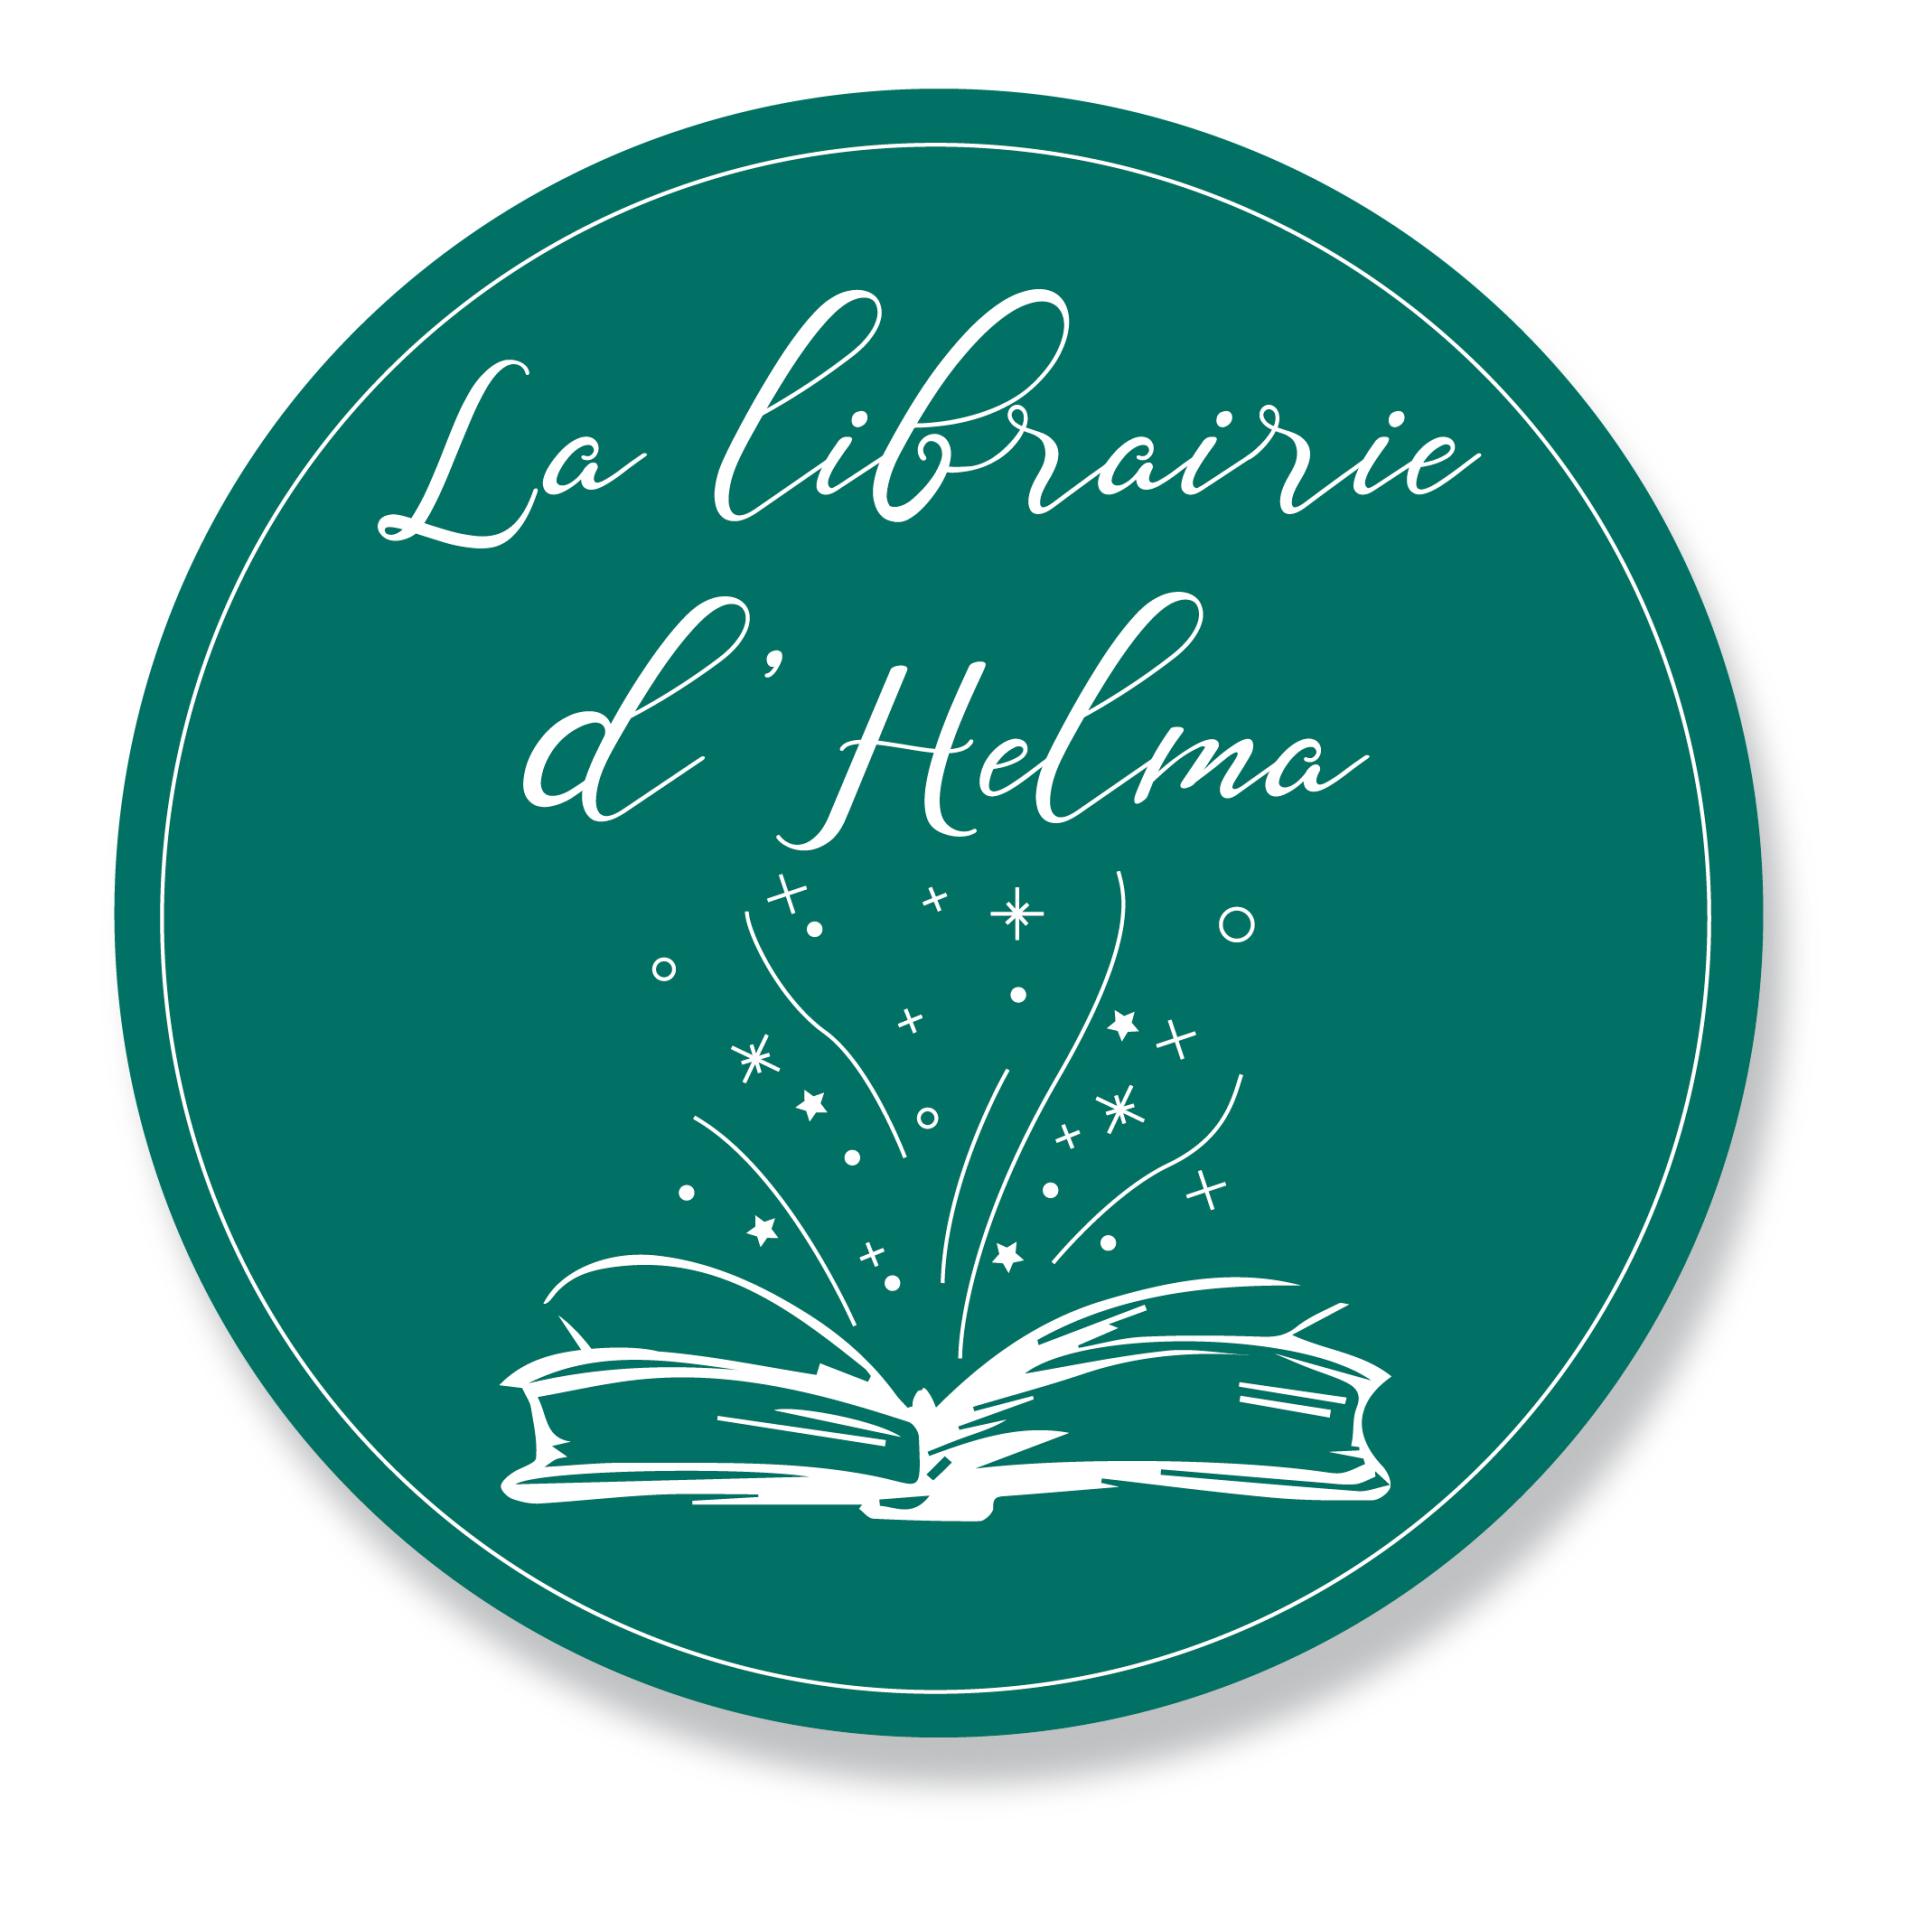 Logo librairie d helma rond